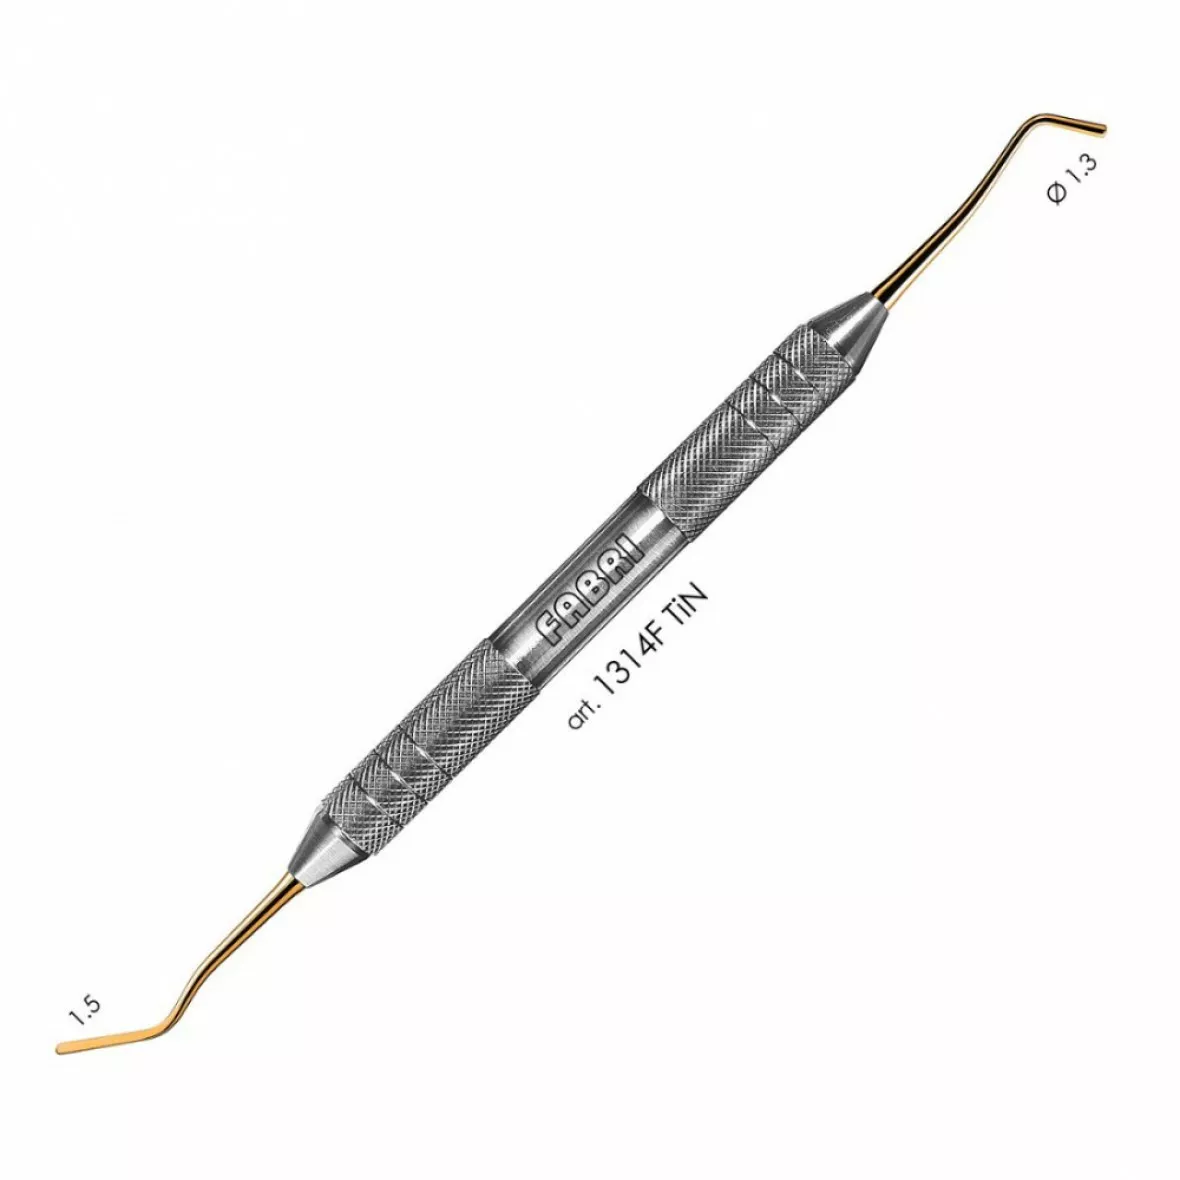 1314F TiN-Удлиненная узкая гладилка с  штопфером  1.3mm. Эргономичная ручка  10mm. Покрытие Gold